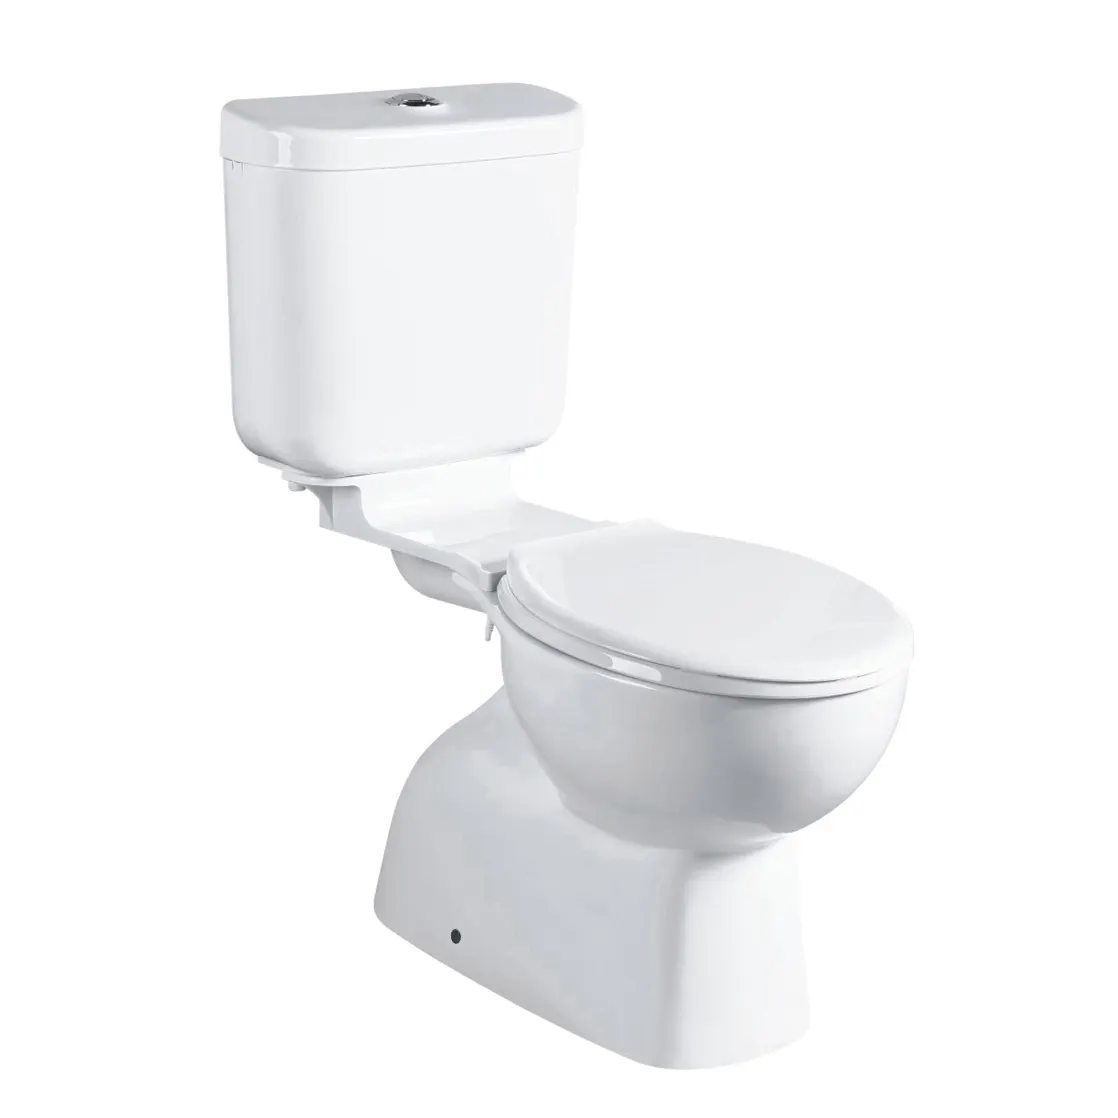 HY-6012 Werk Großhandel Sanitärkeramik Europa CE-Zertifizierung randlose Wäsche Doppelspülung-Toilette Keramik-Wäsche Zwei-Stück-Toilette